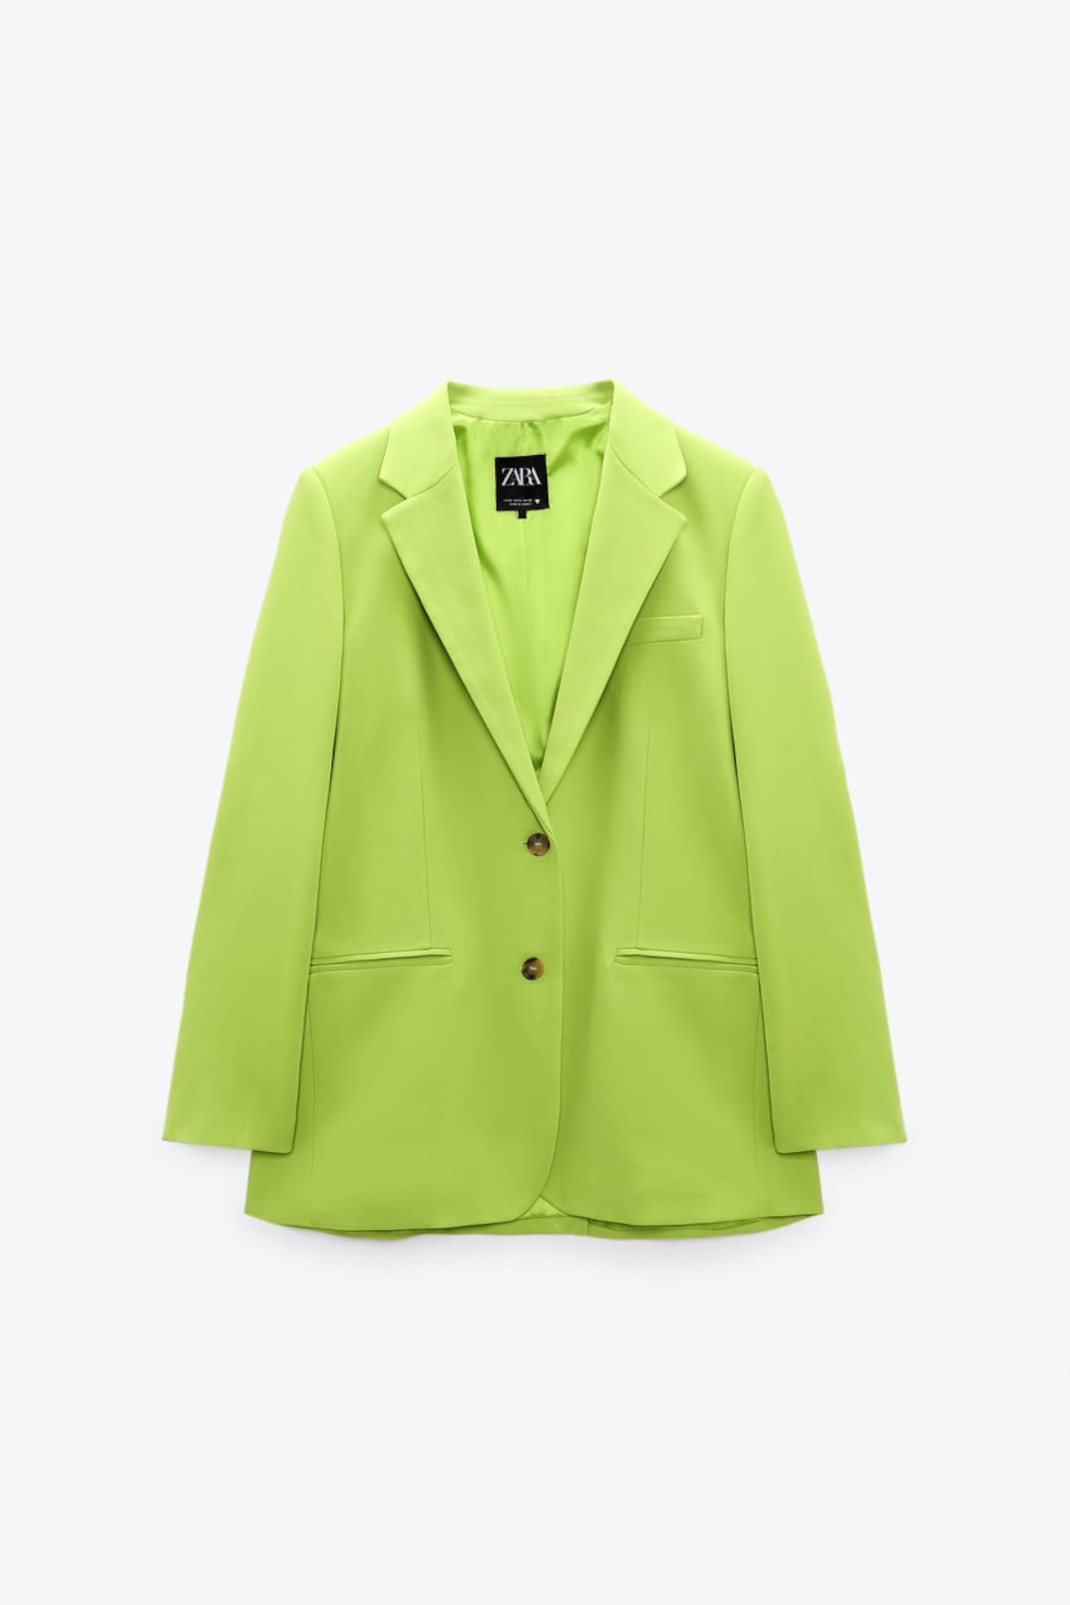 Η Nαταλία Γερμανού με blazer από τα Zara -Στο πιο ωραίο χρώμα της άνοιξης